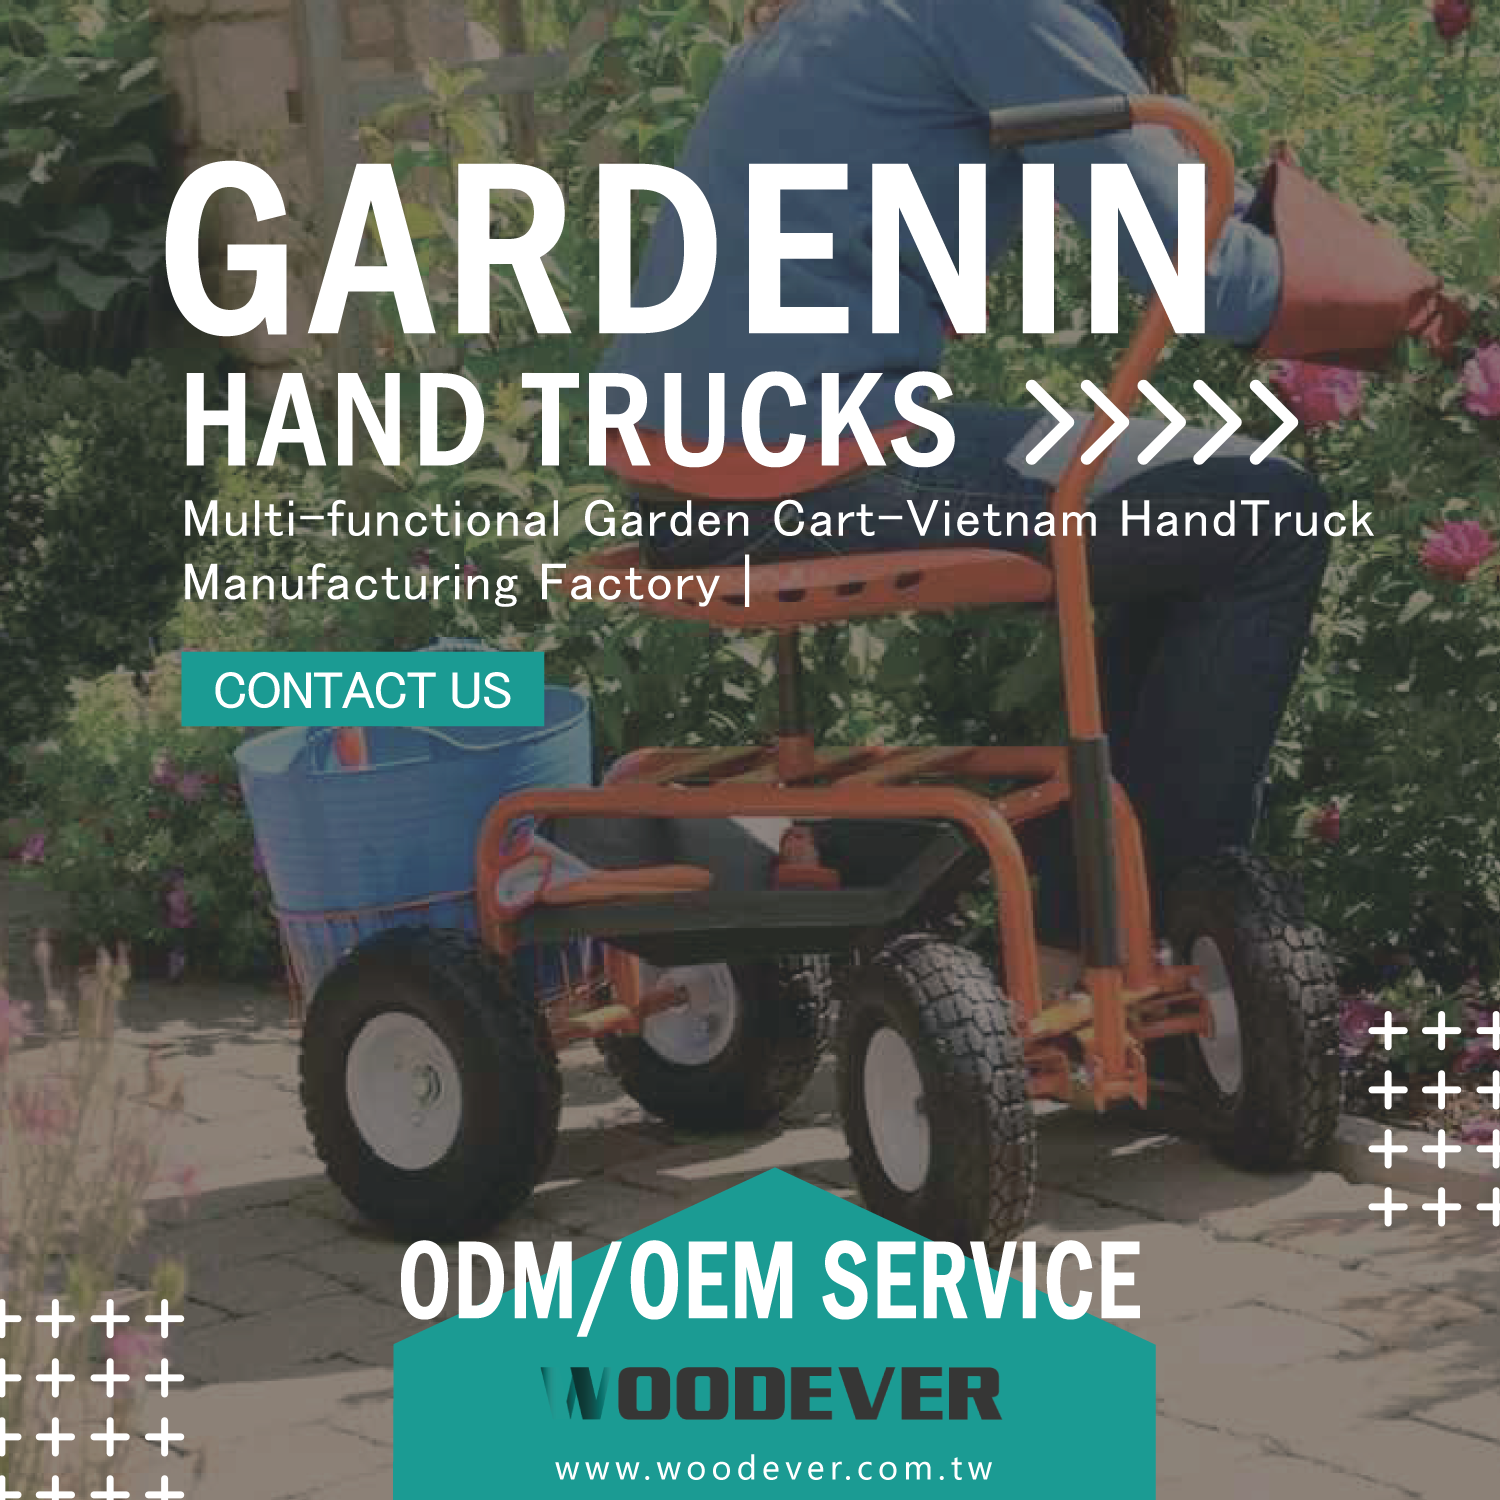 WOODEVER Vietnamse Trolley Handtruck Fabrikant & Groothandelsfabriek biedt gloednieuwe tuinwagenstijlen, zeer flexibele op maat gemaakte OEM & ODM wereldwijde one-stop B2B-service, en biedt de beste handtruckoplossingen voor wereldwijde klanten.